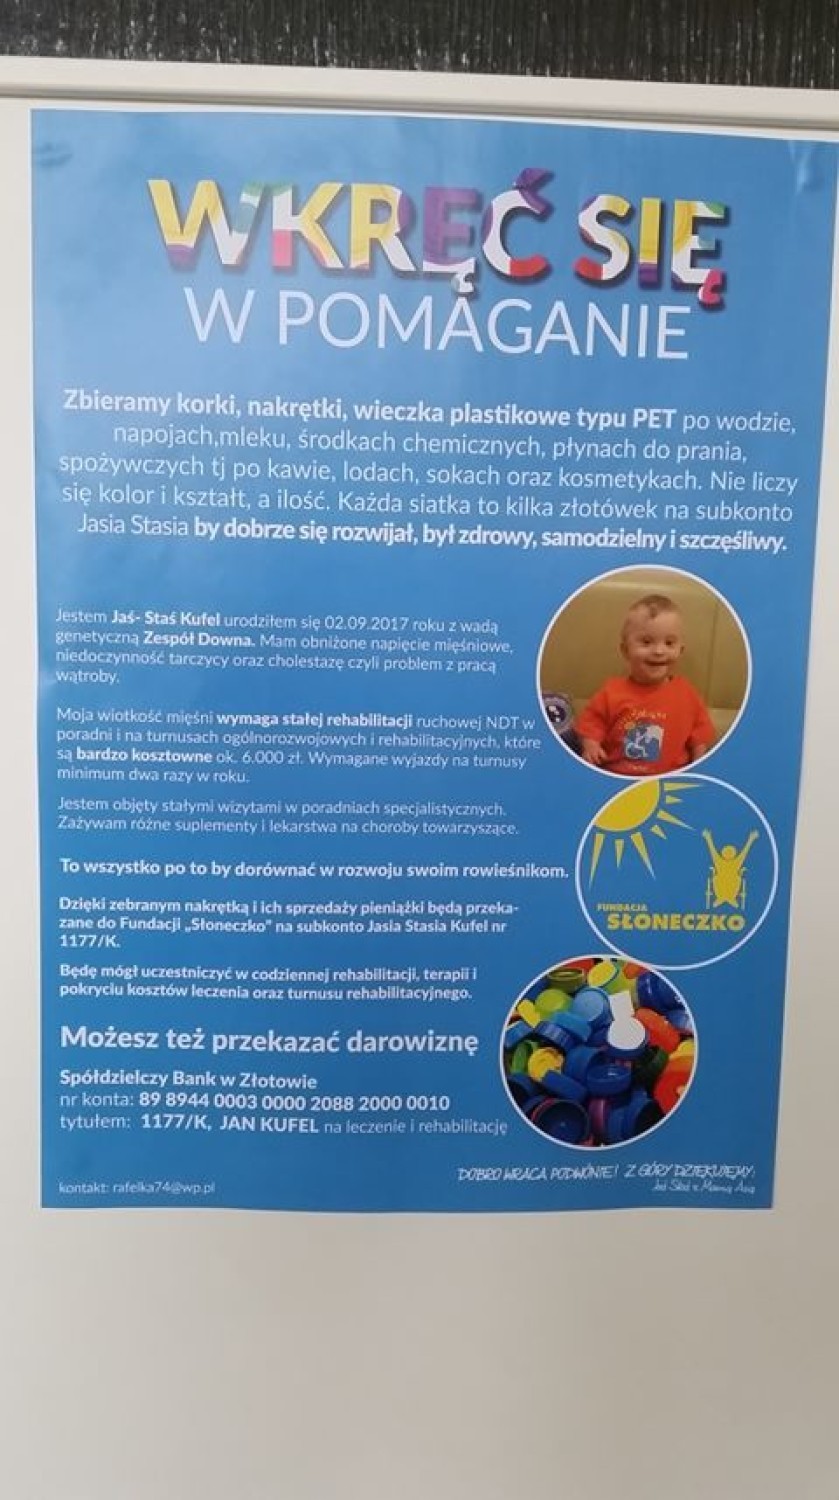 Nowy Dwór Gdański. Trwa akcja charytatywna na rzecz Jasia Stasia. Mieszkańcy zbierają plastikowe nakrętki, aby pomóc chłopcu